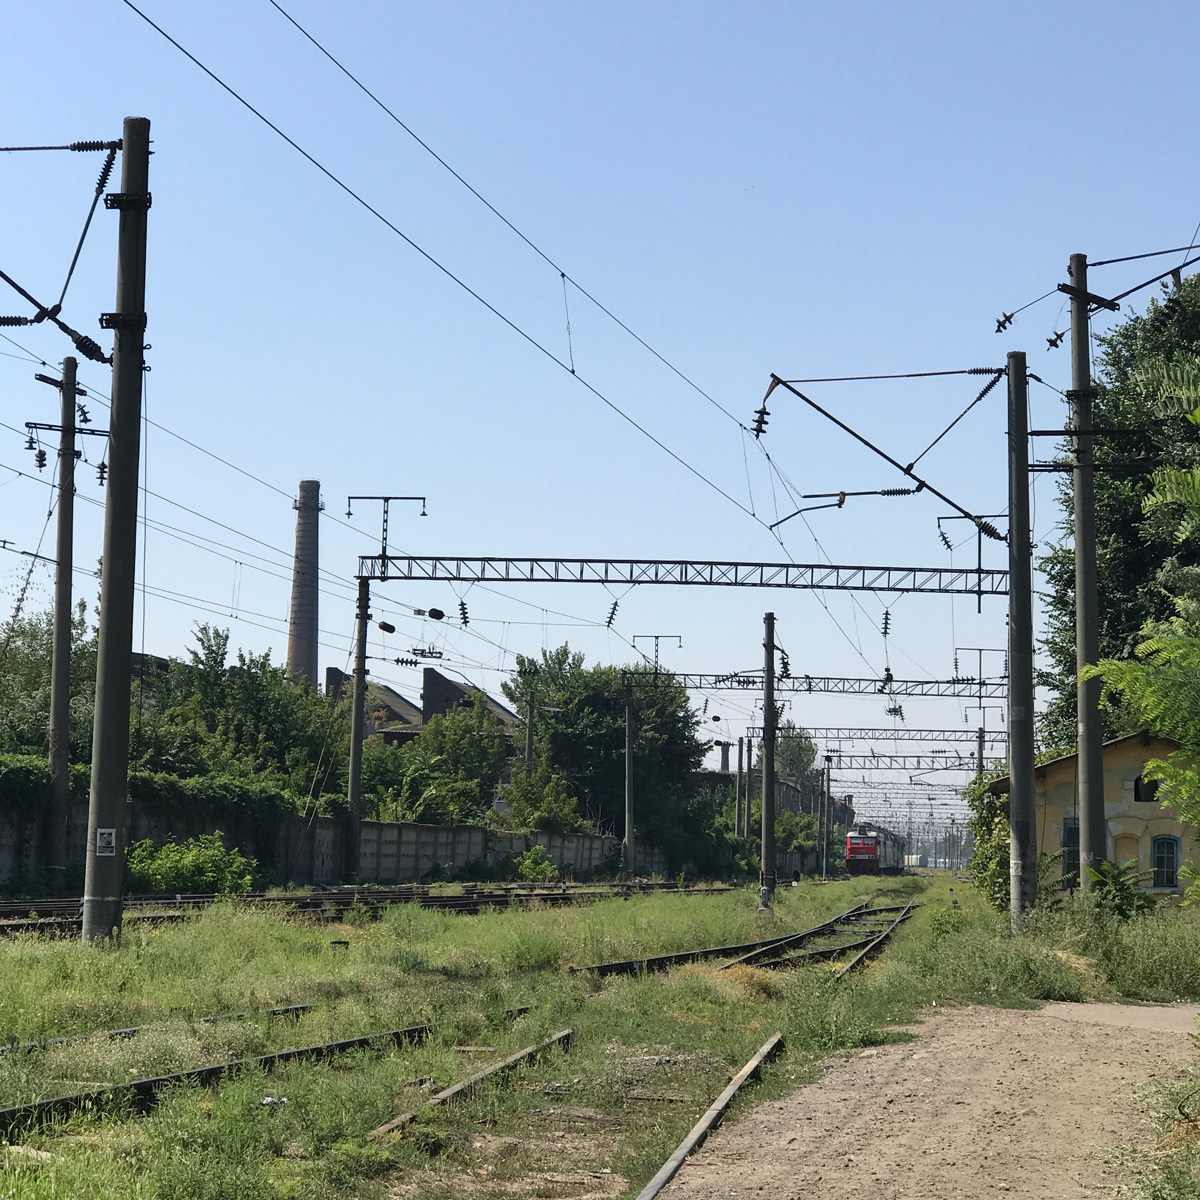 Old Odessa railway